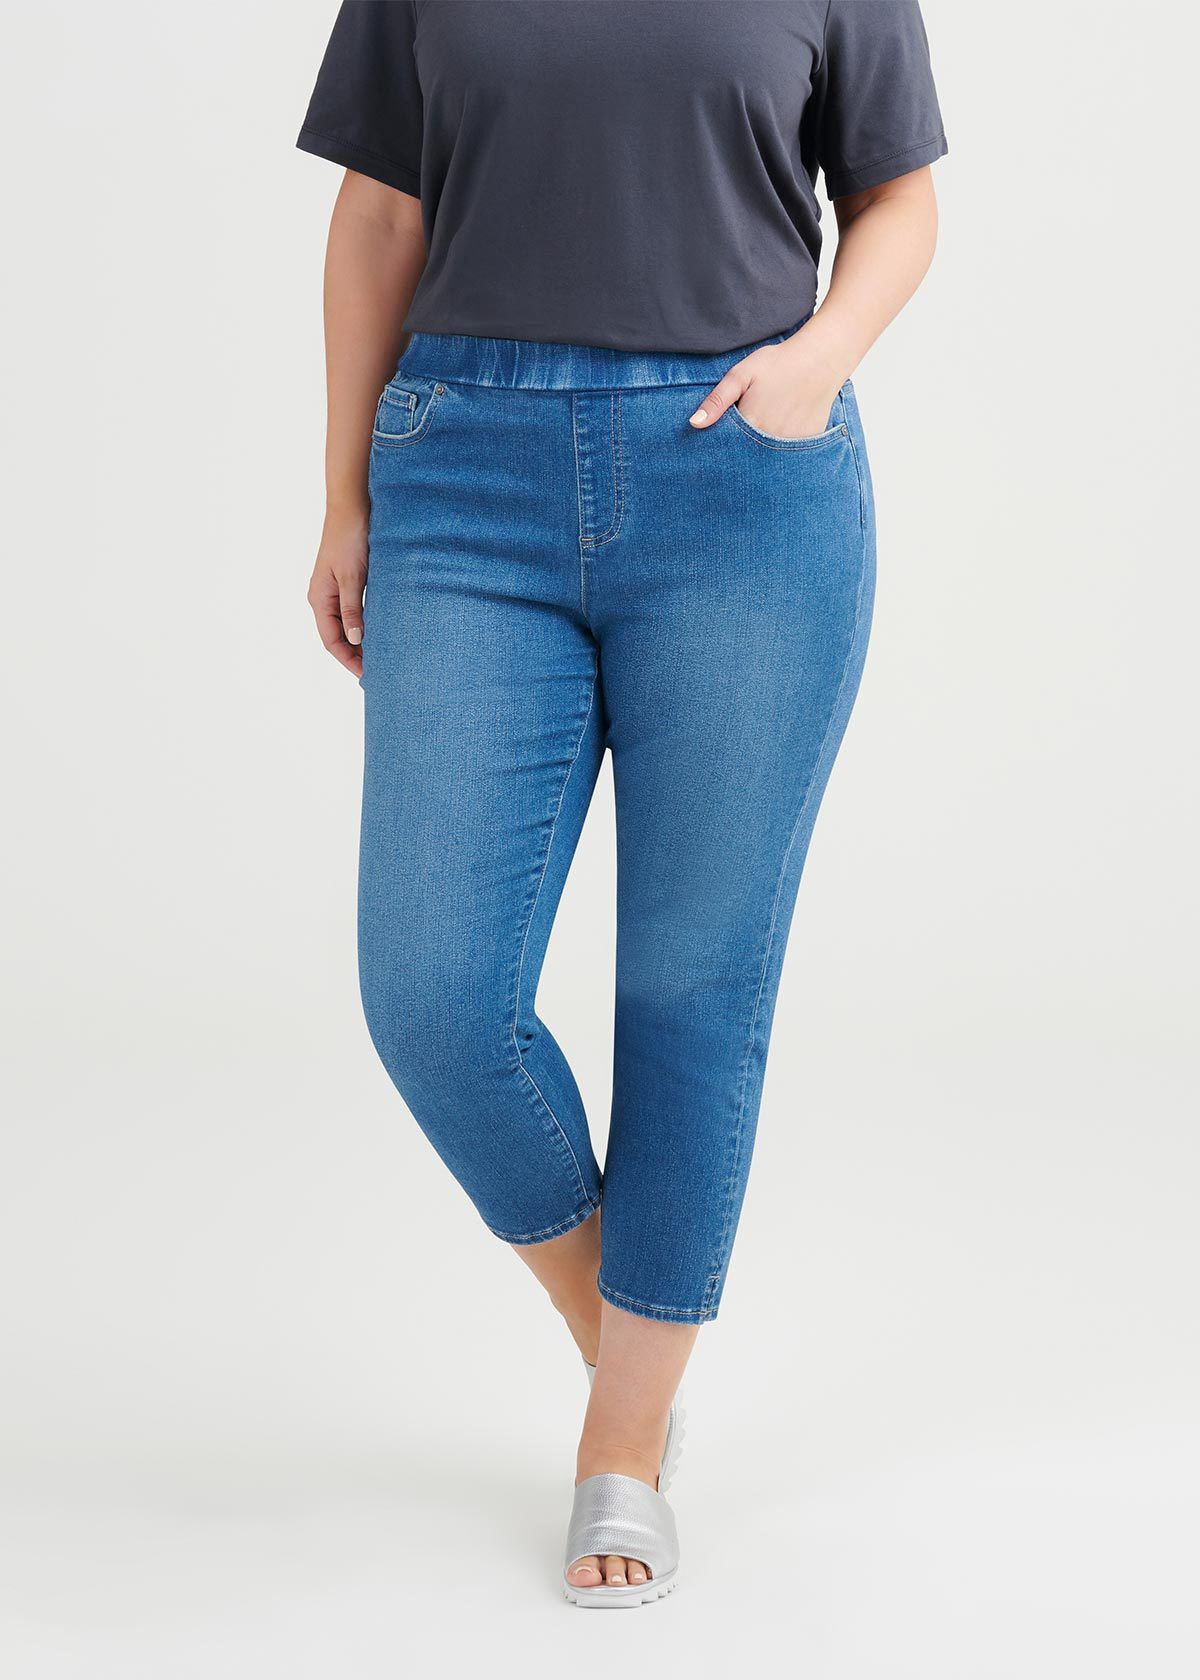 capri jeans australia